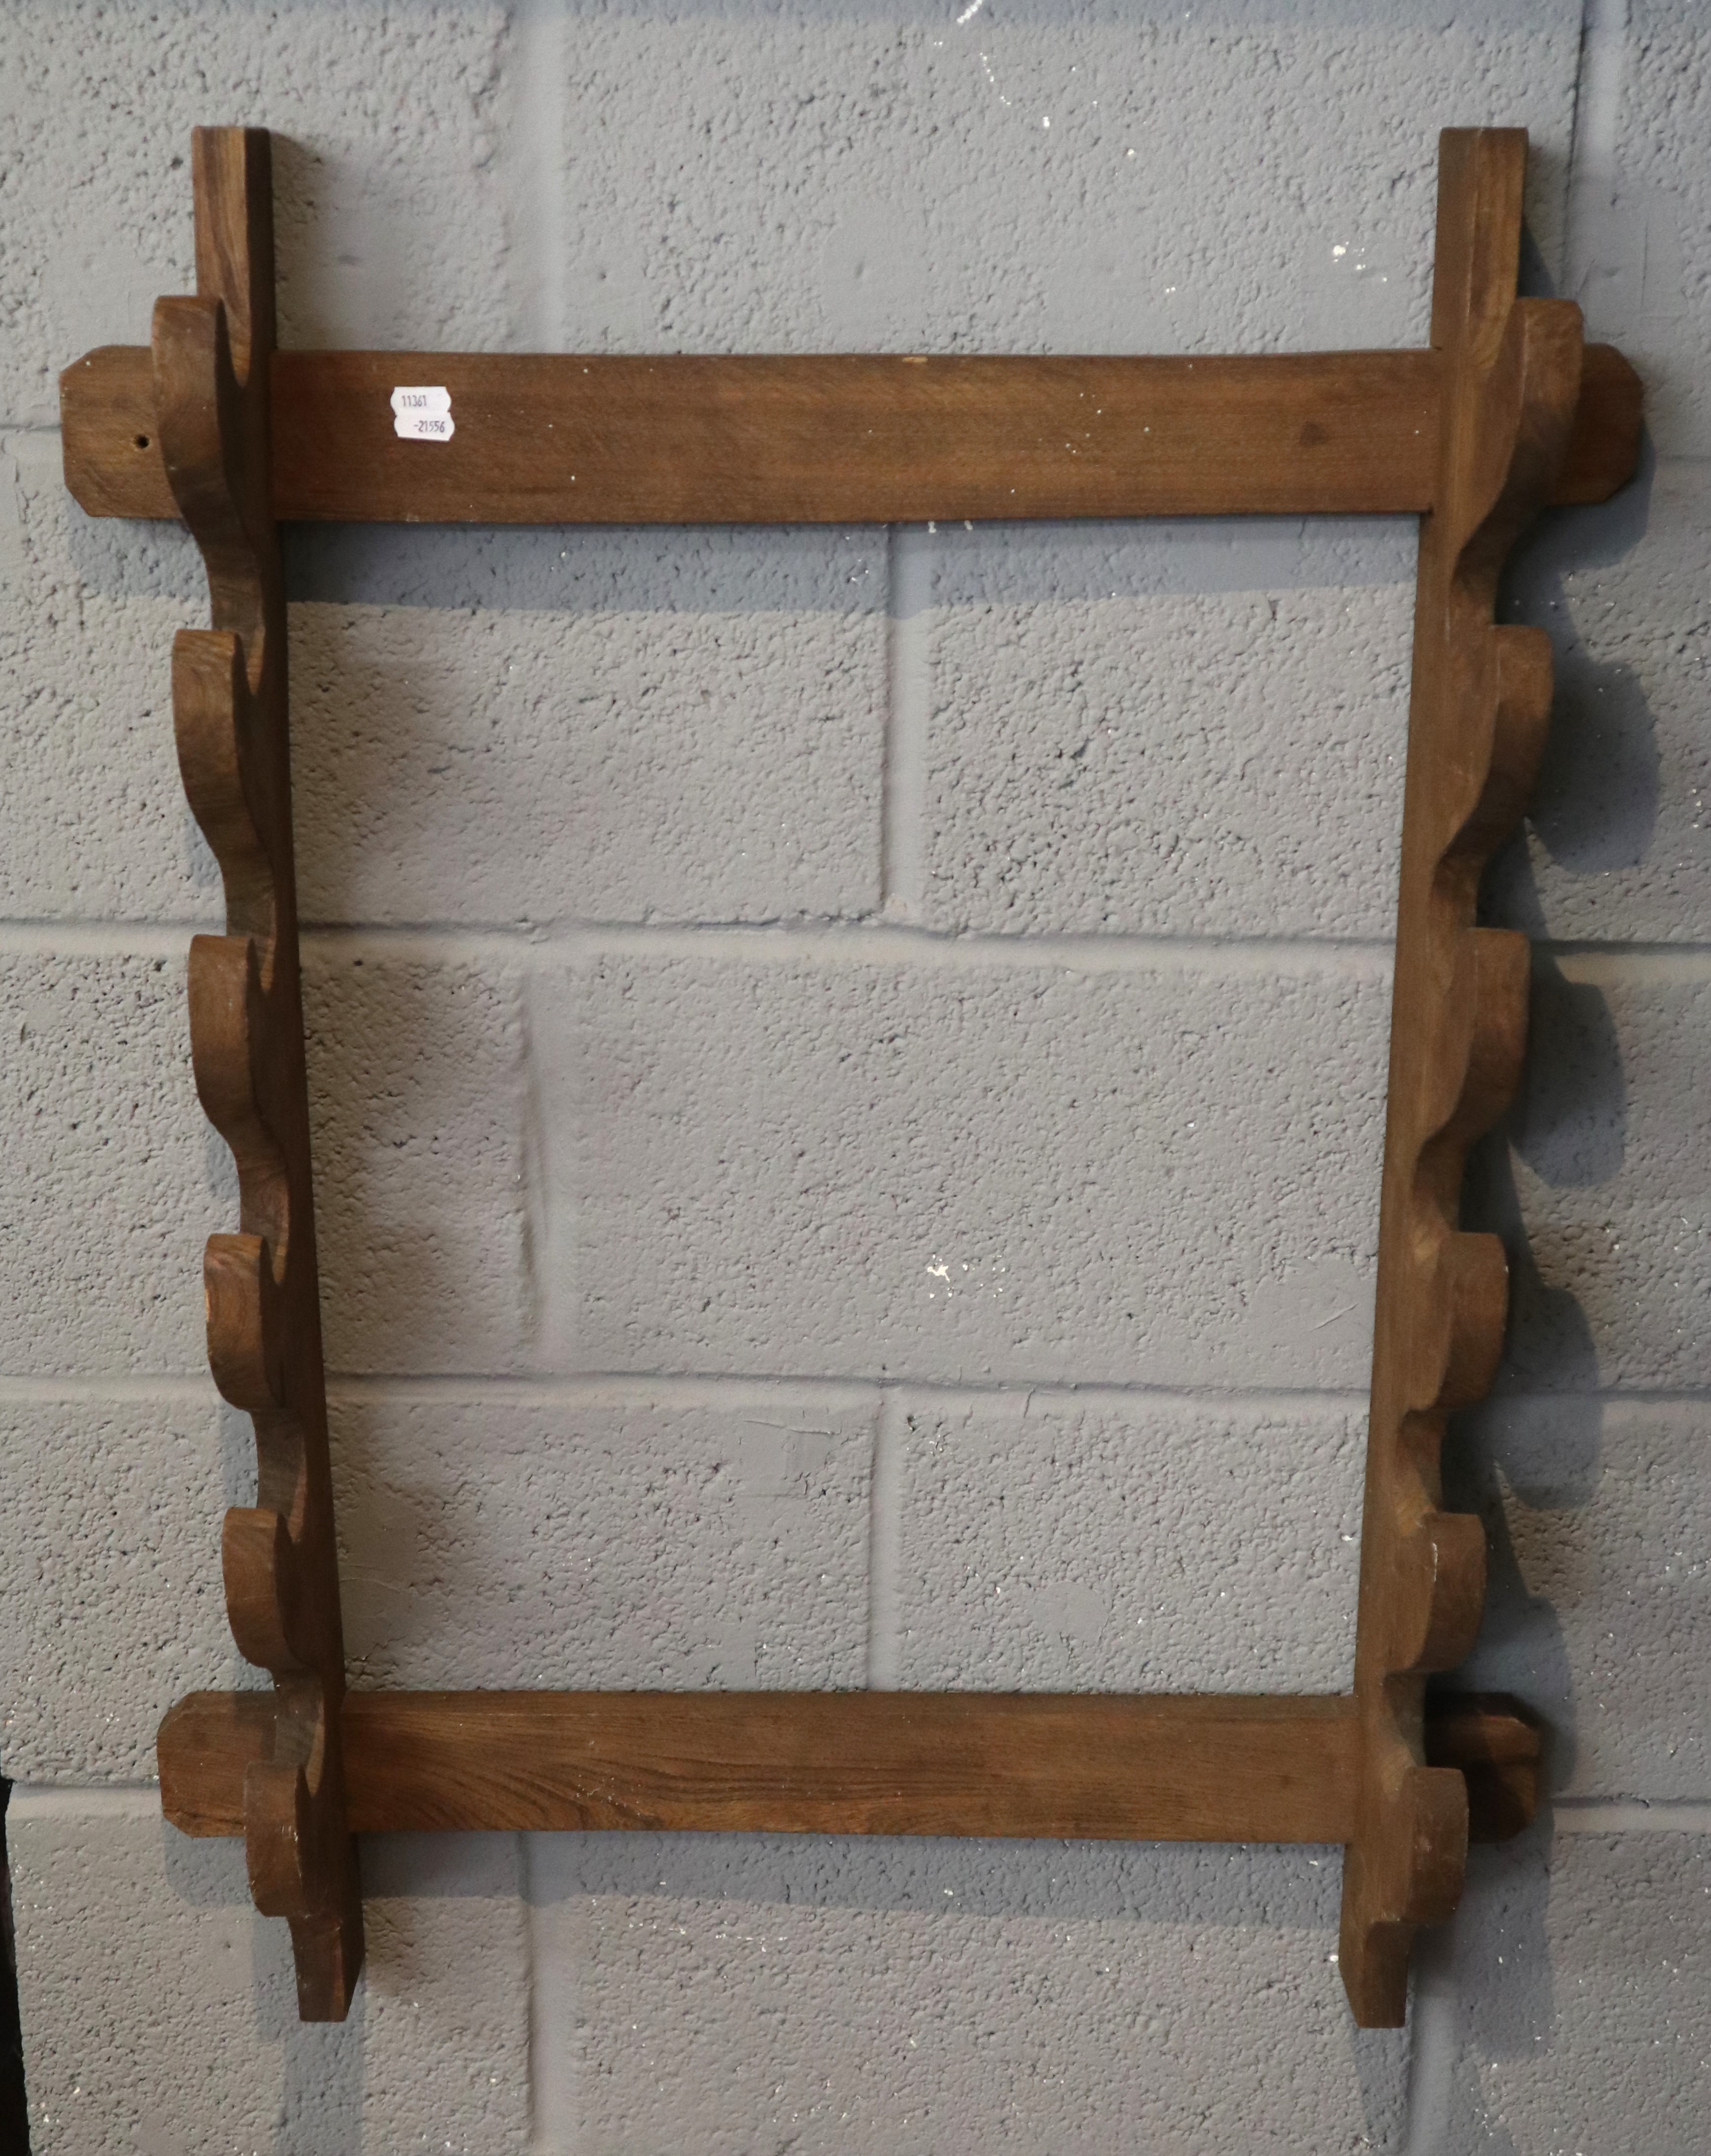 Wooden gun rack - Image 2 of 2